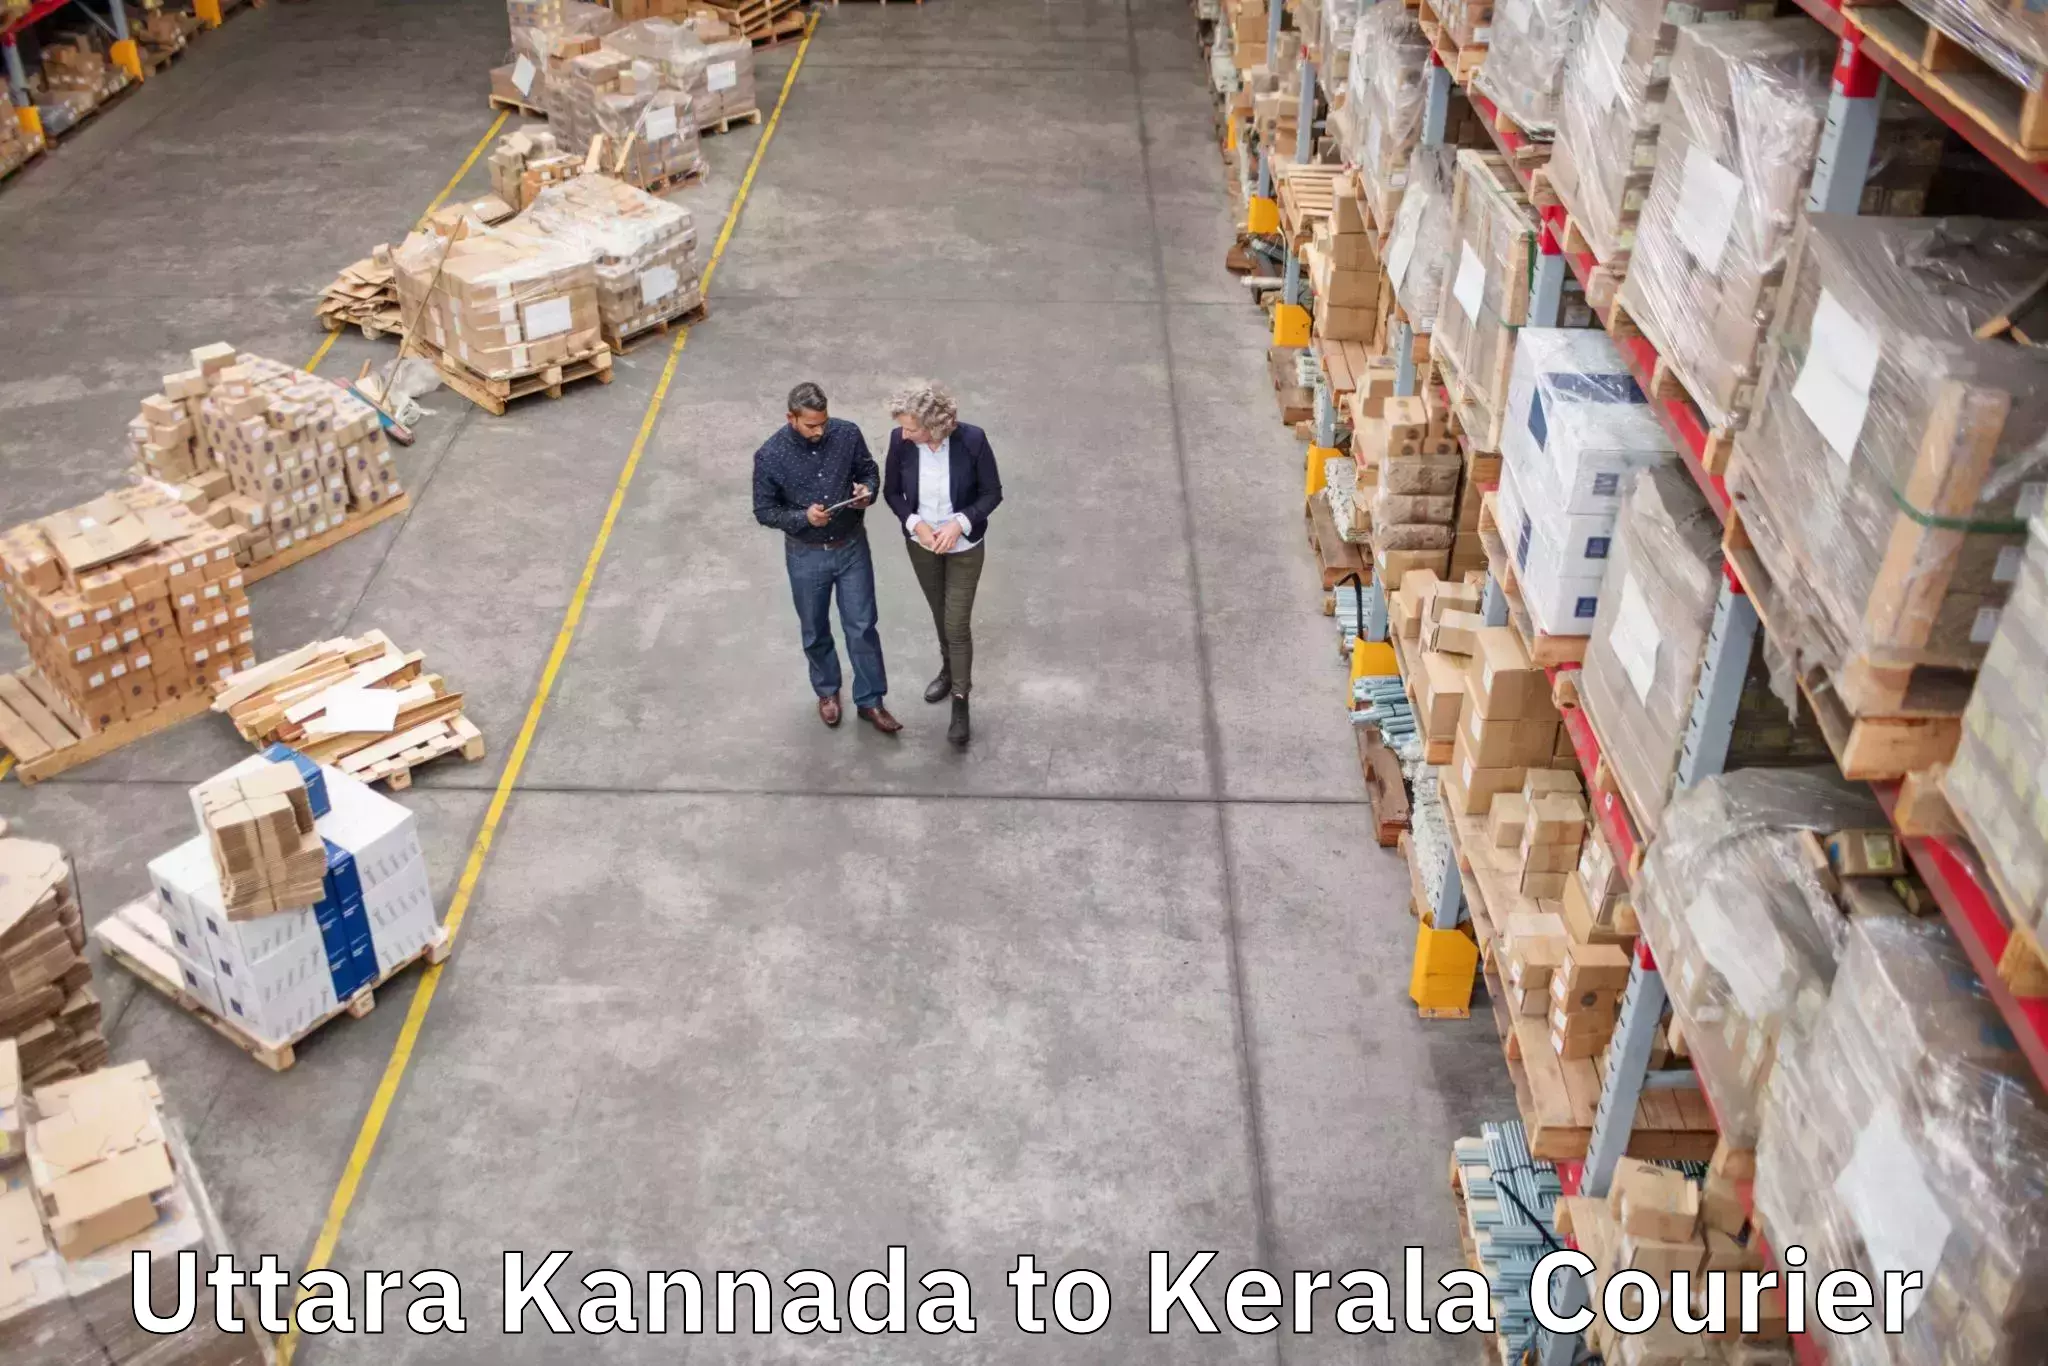 Luggage transport company Uttara Kannada to Kerala